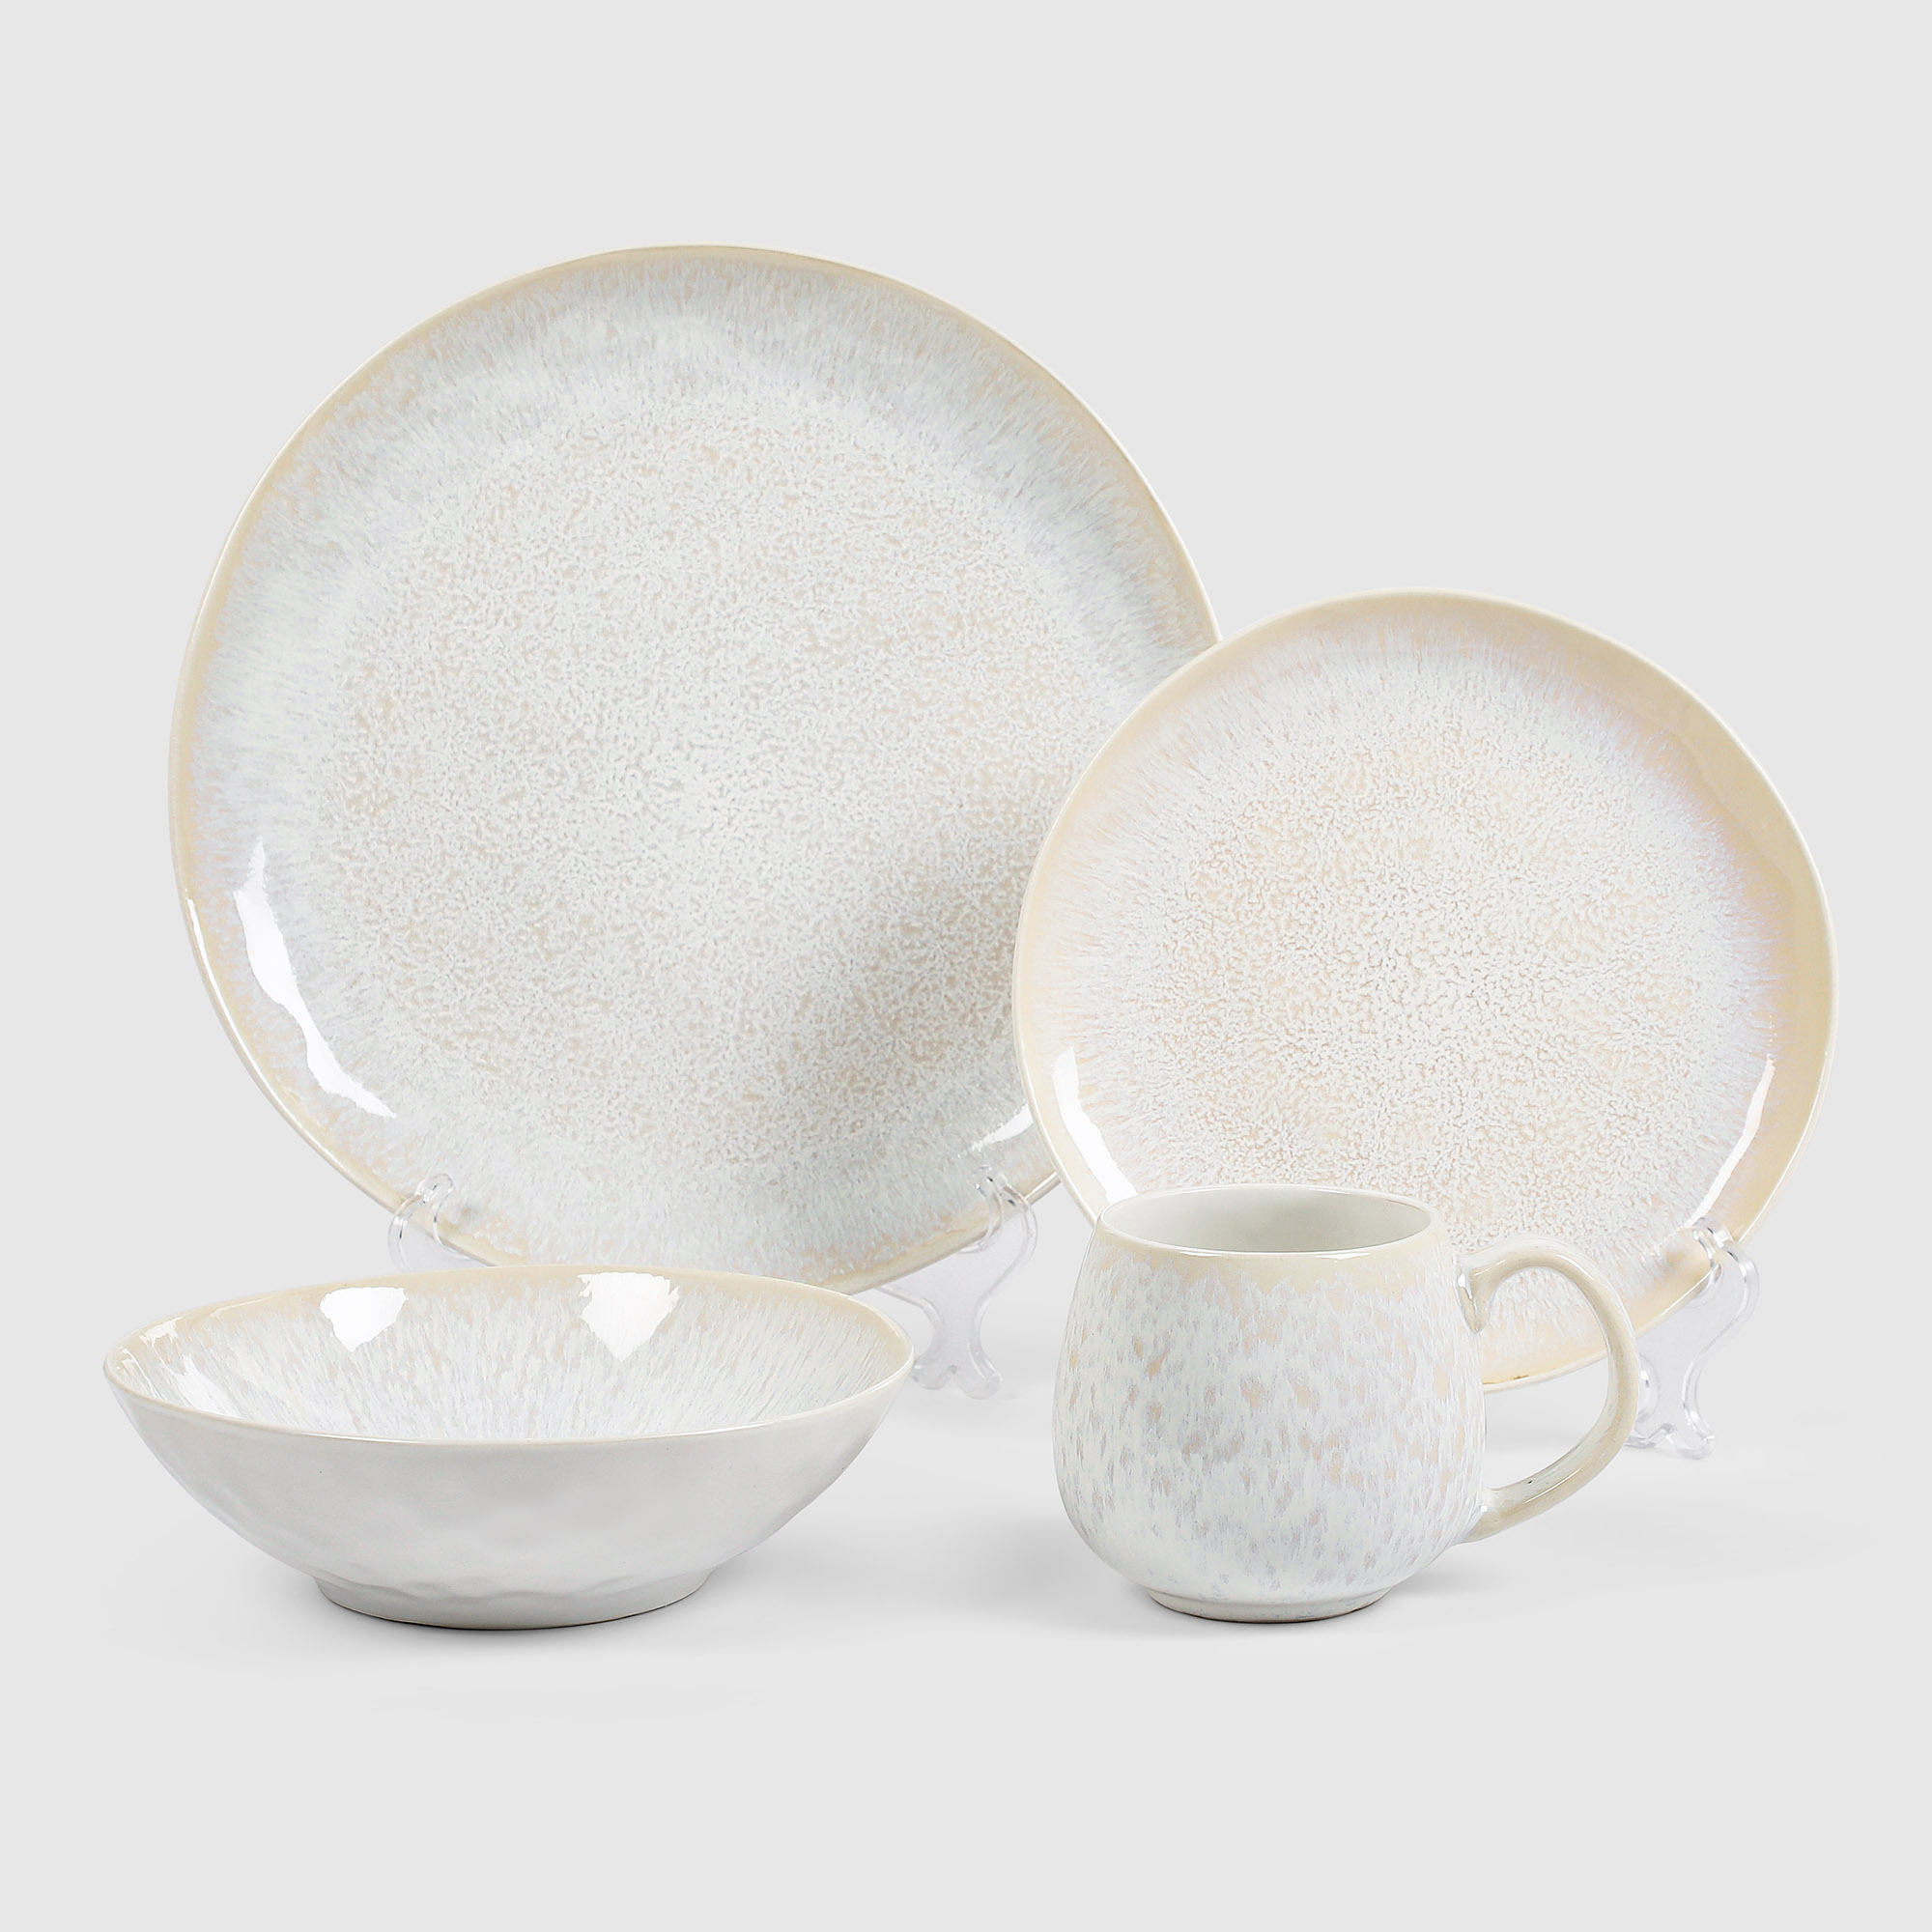 Набор керамической посуды White Rabbit глянец 16 предметов набор для наращивания и дизайна ногтей силиконовая кисть дотс 2 шт силиконовая кисть пушер белый